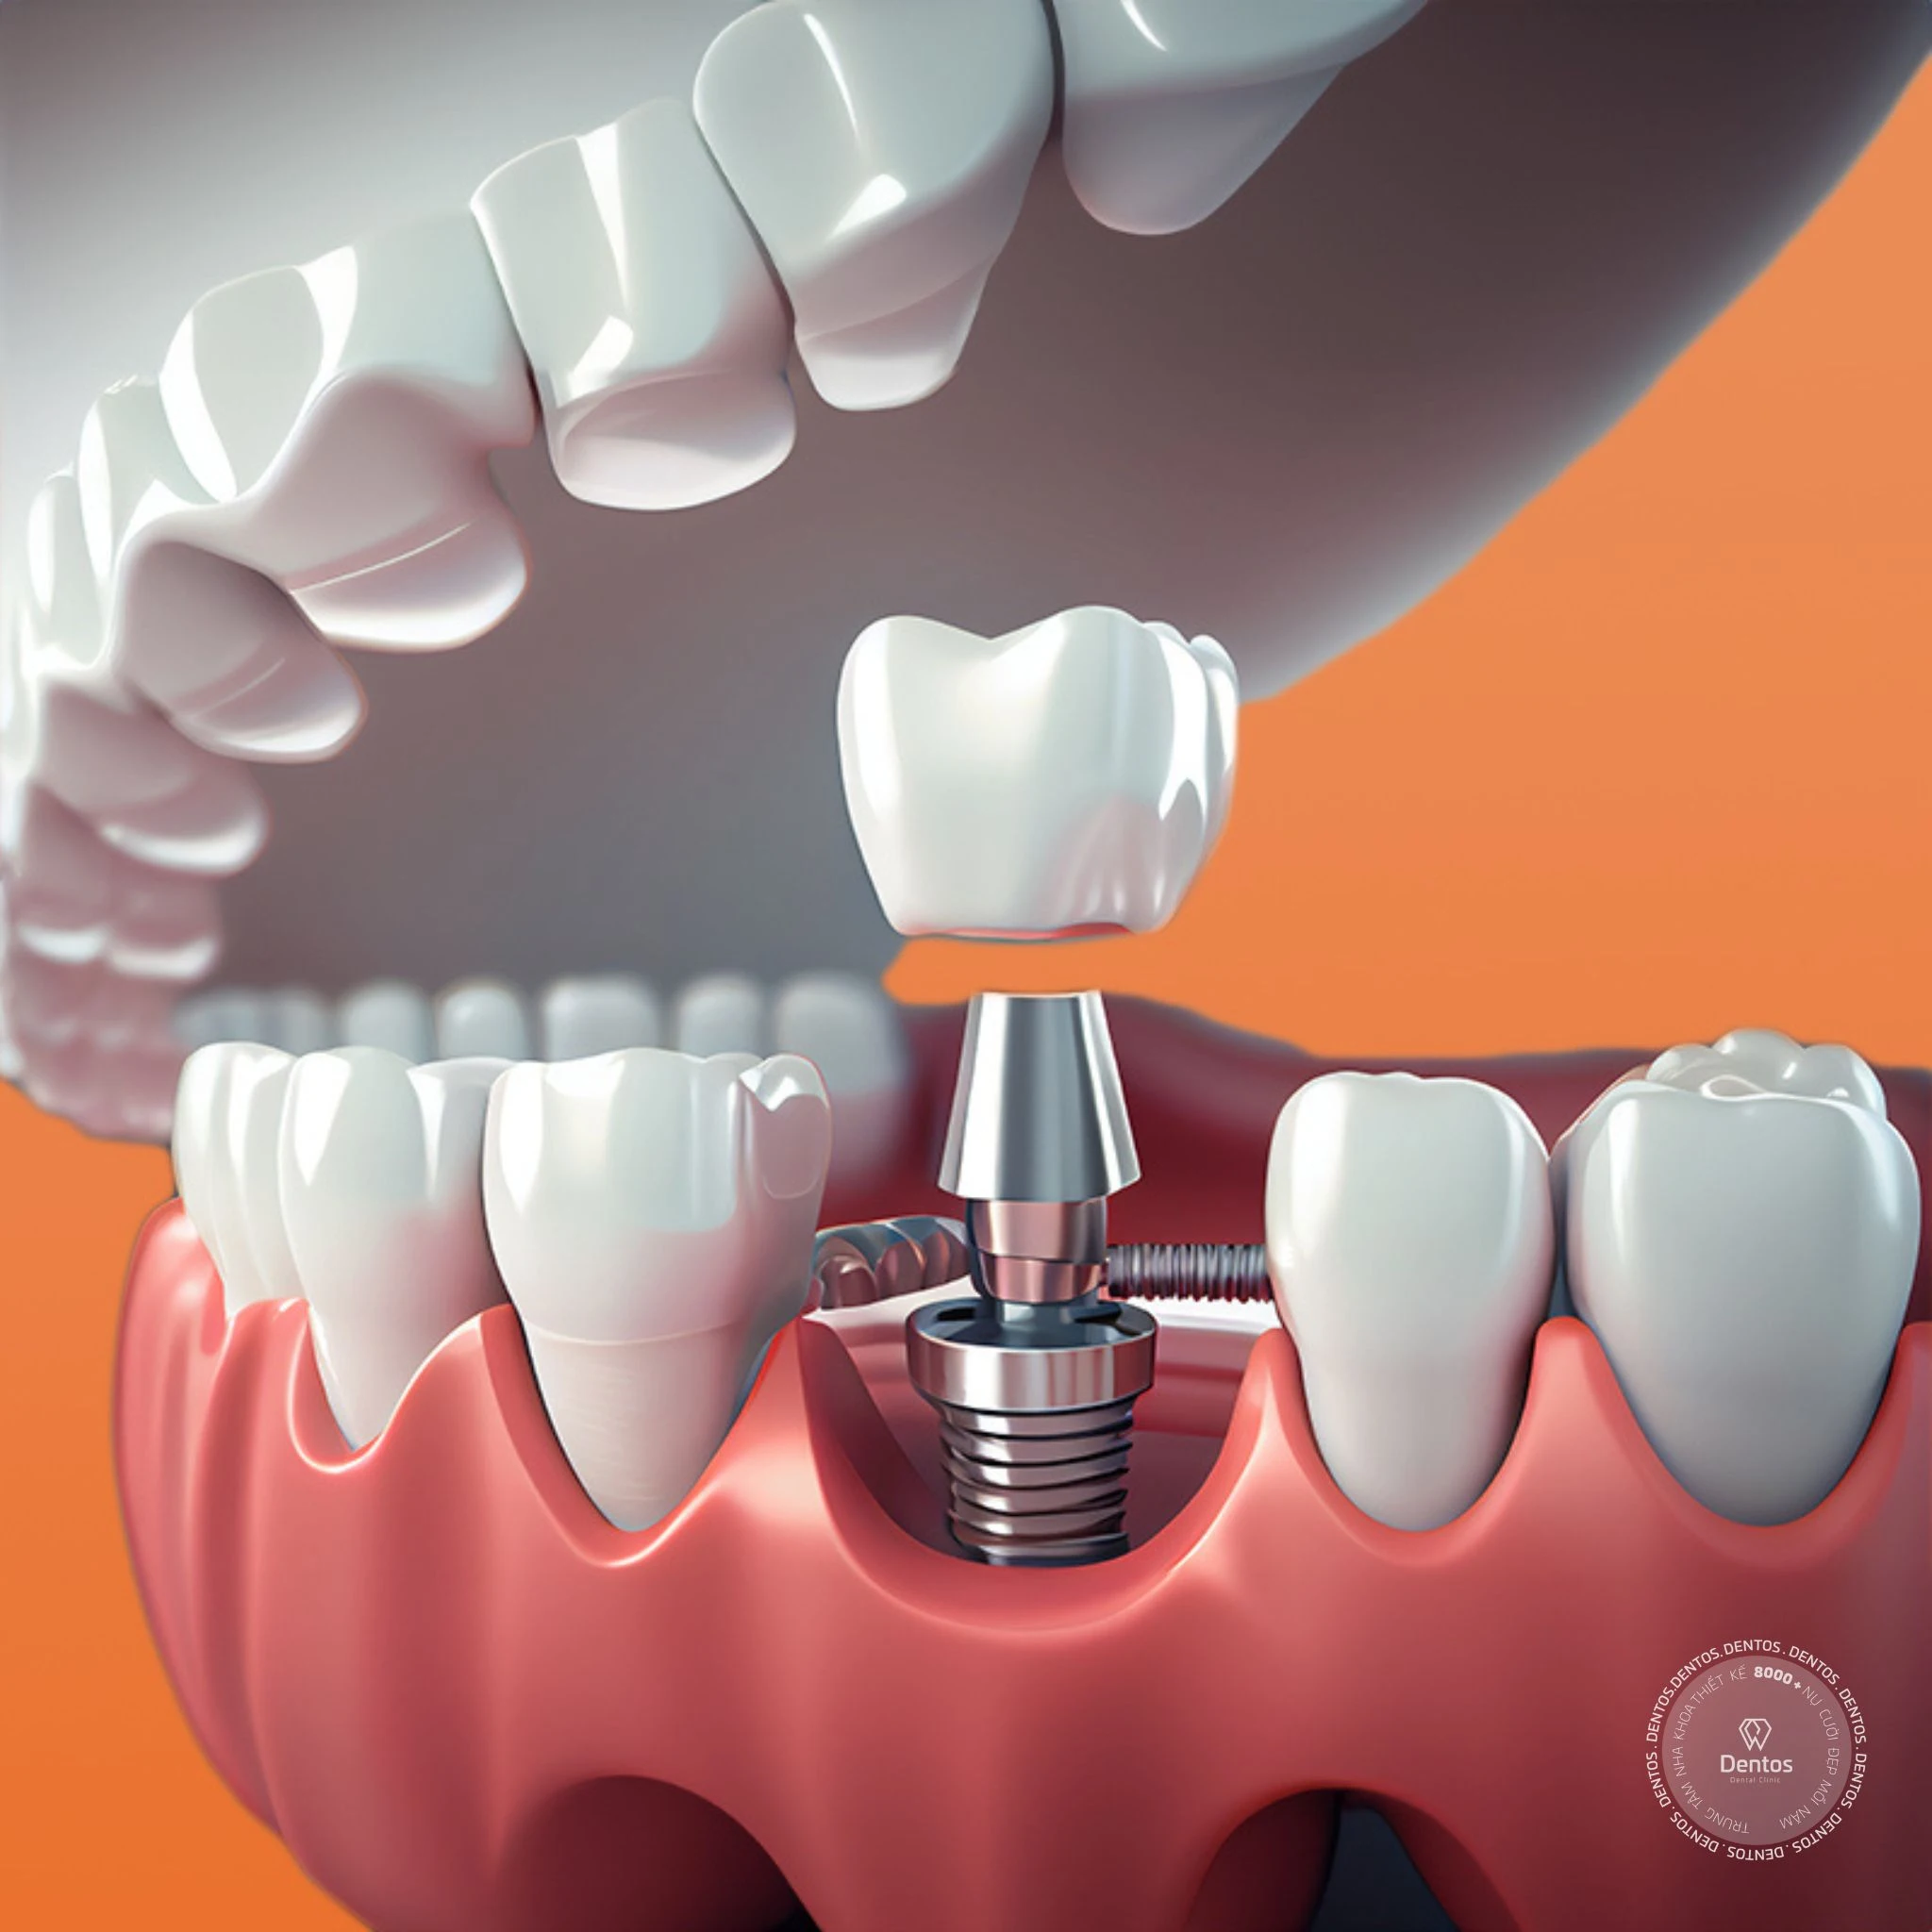 Trồng răng sứ là cấy ghép trụ implant vào xương hàm rồi lắp mão sứ lên trên